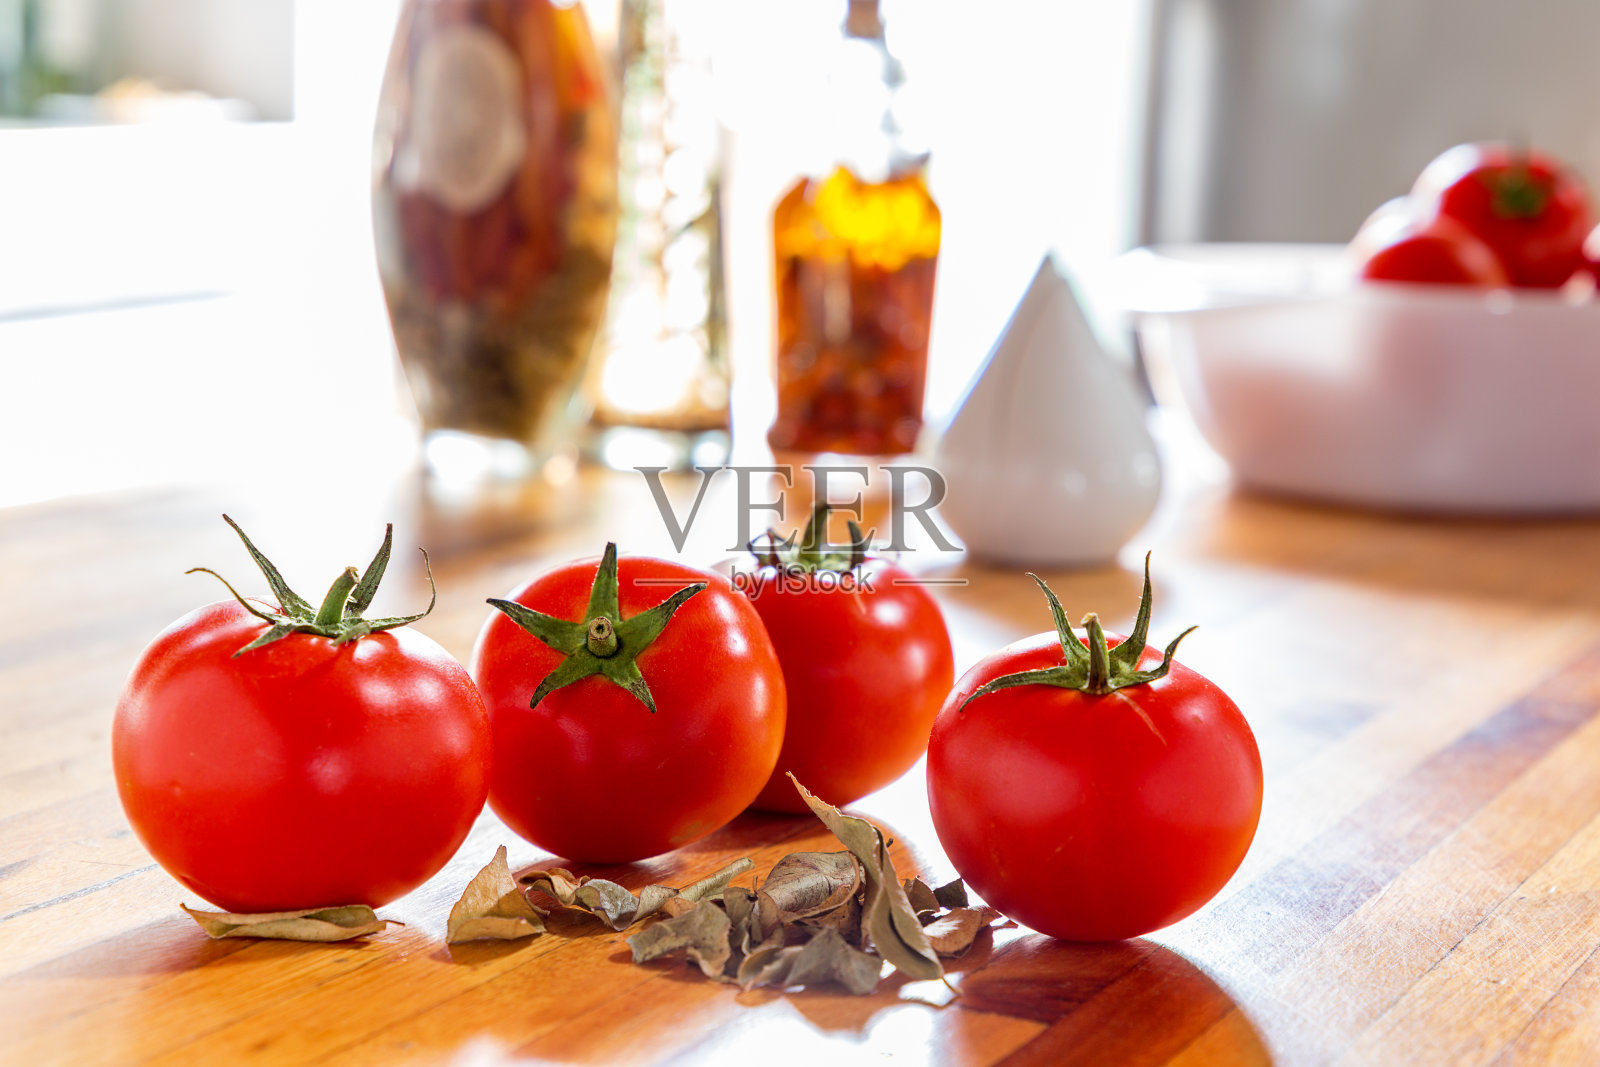 番茄菜的食用建议照片摄影图片